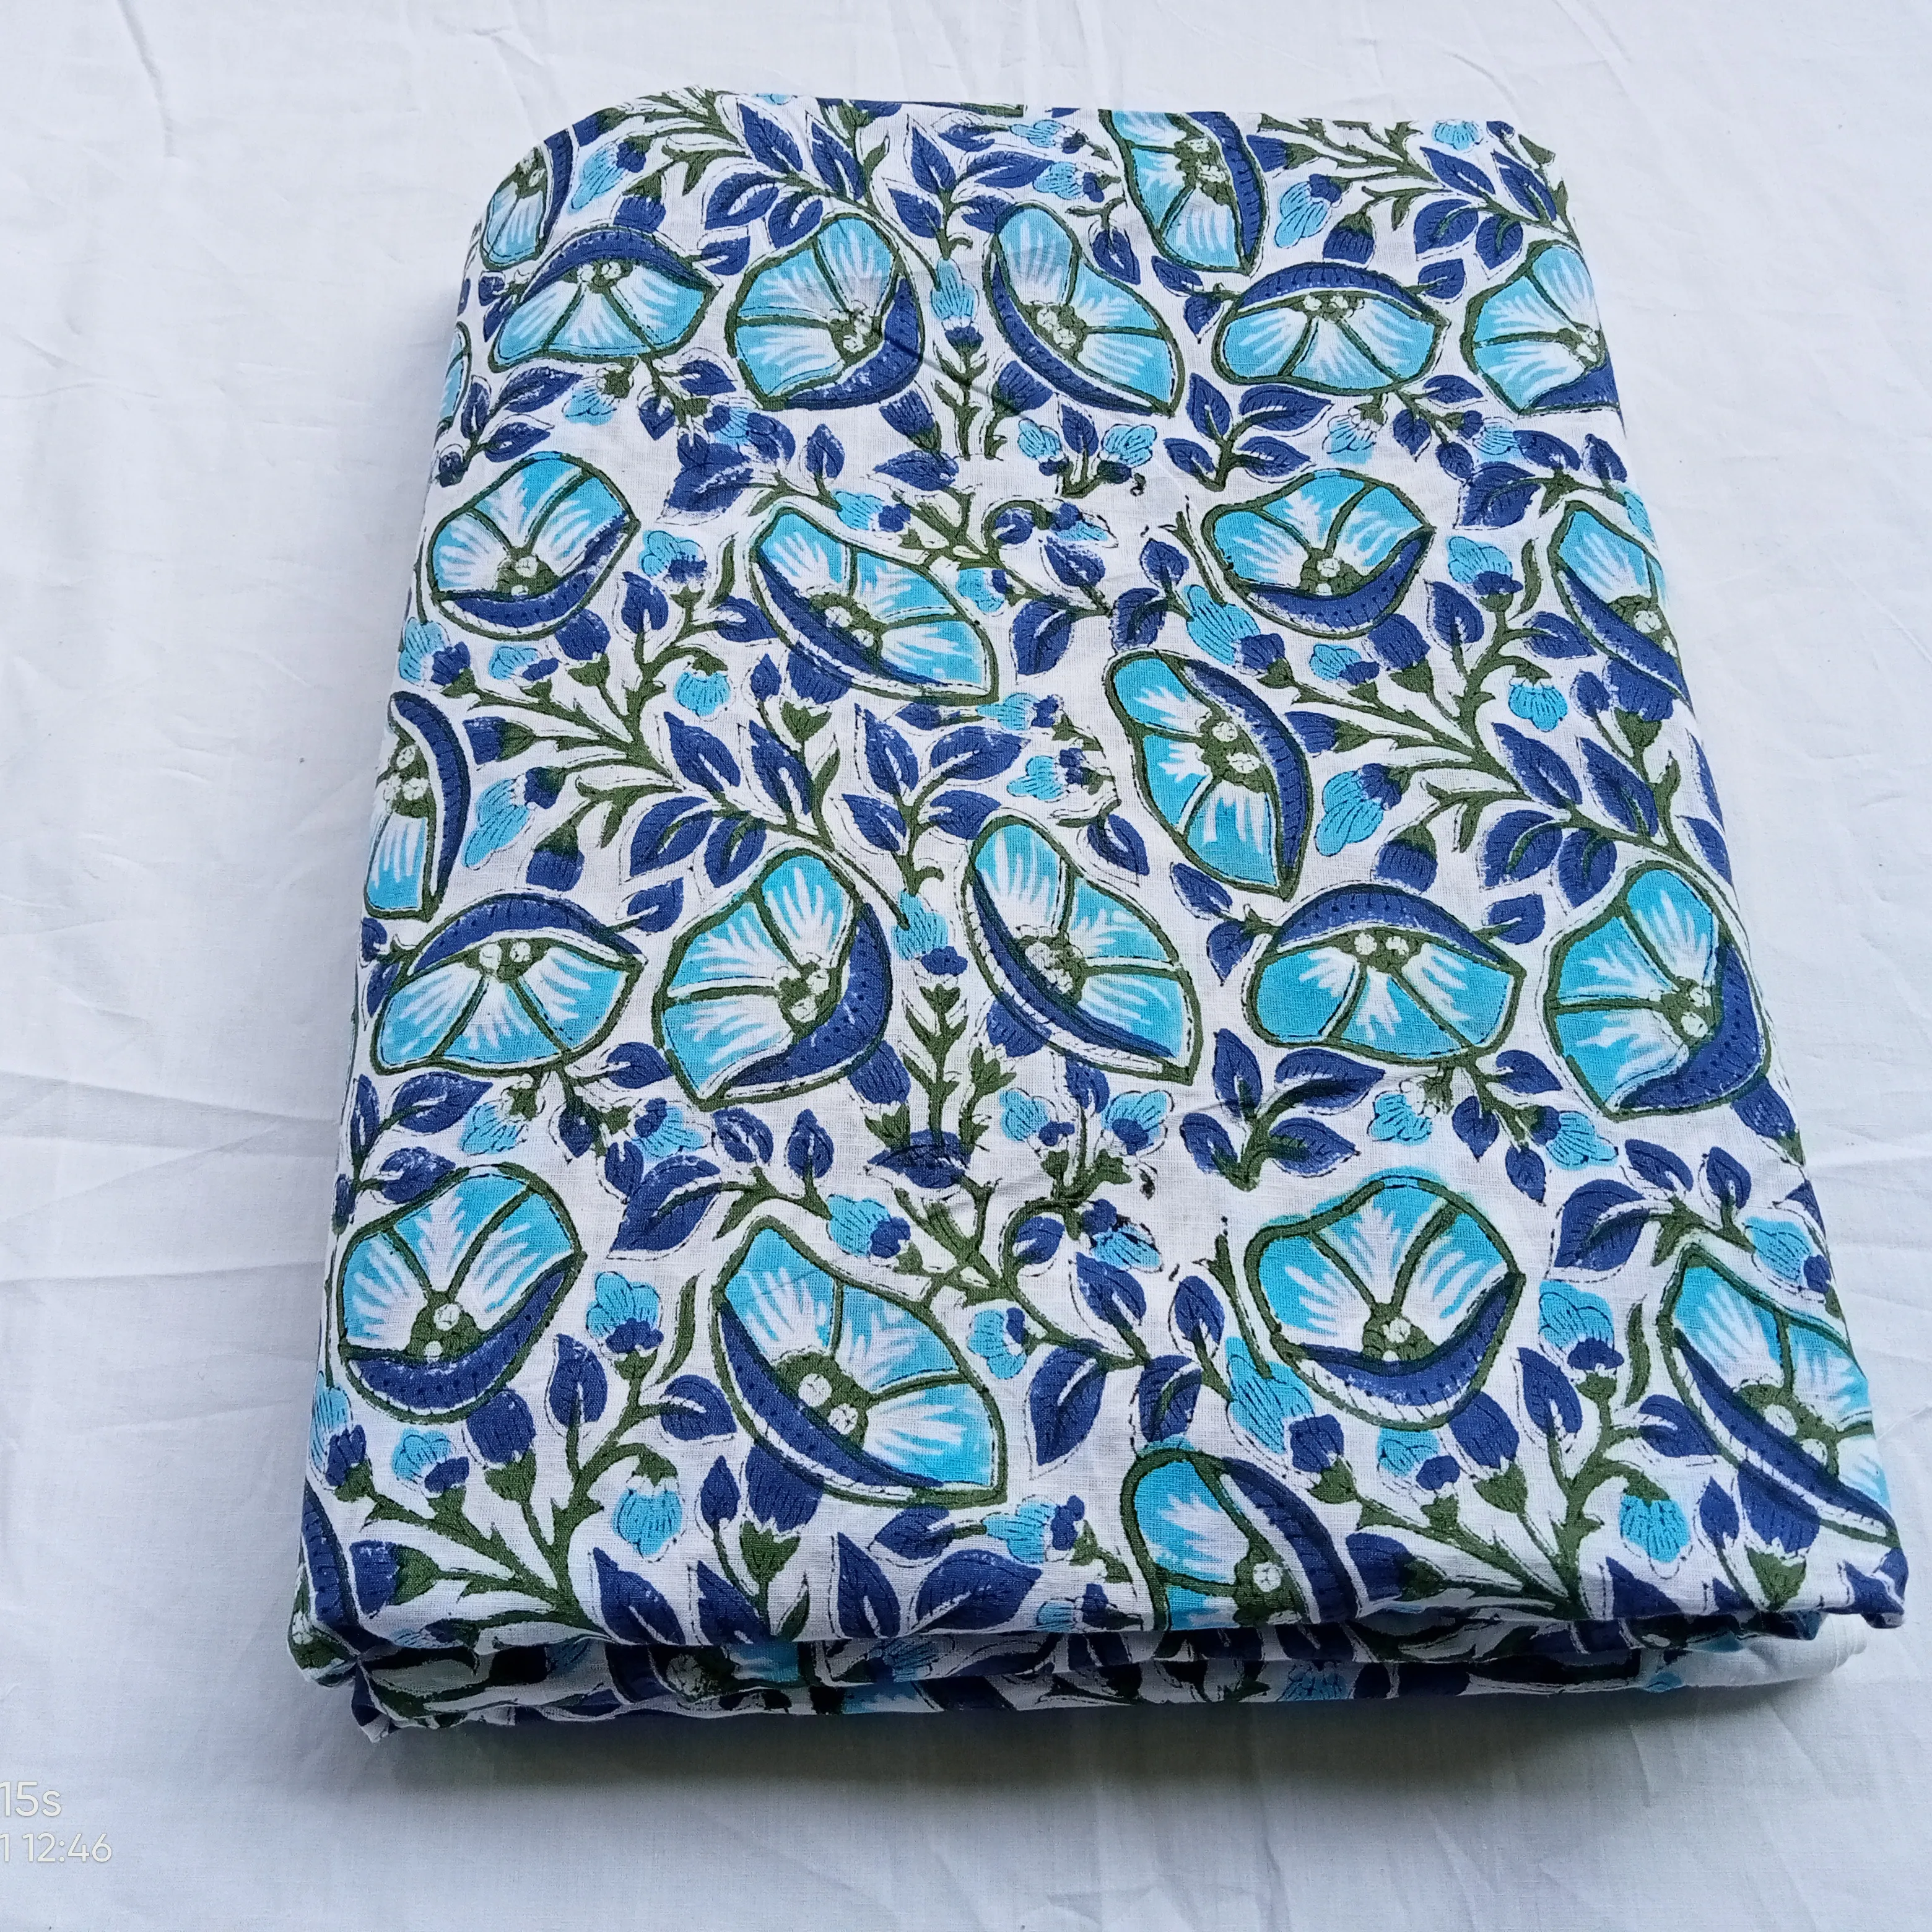 Tecido de algodão floral azul por quintal, tecido impressão de bloco, tecido da índia, tecido de algodão impresso por quintal, tecido de impressão de blocos de mão